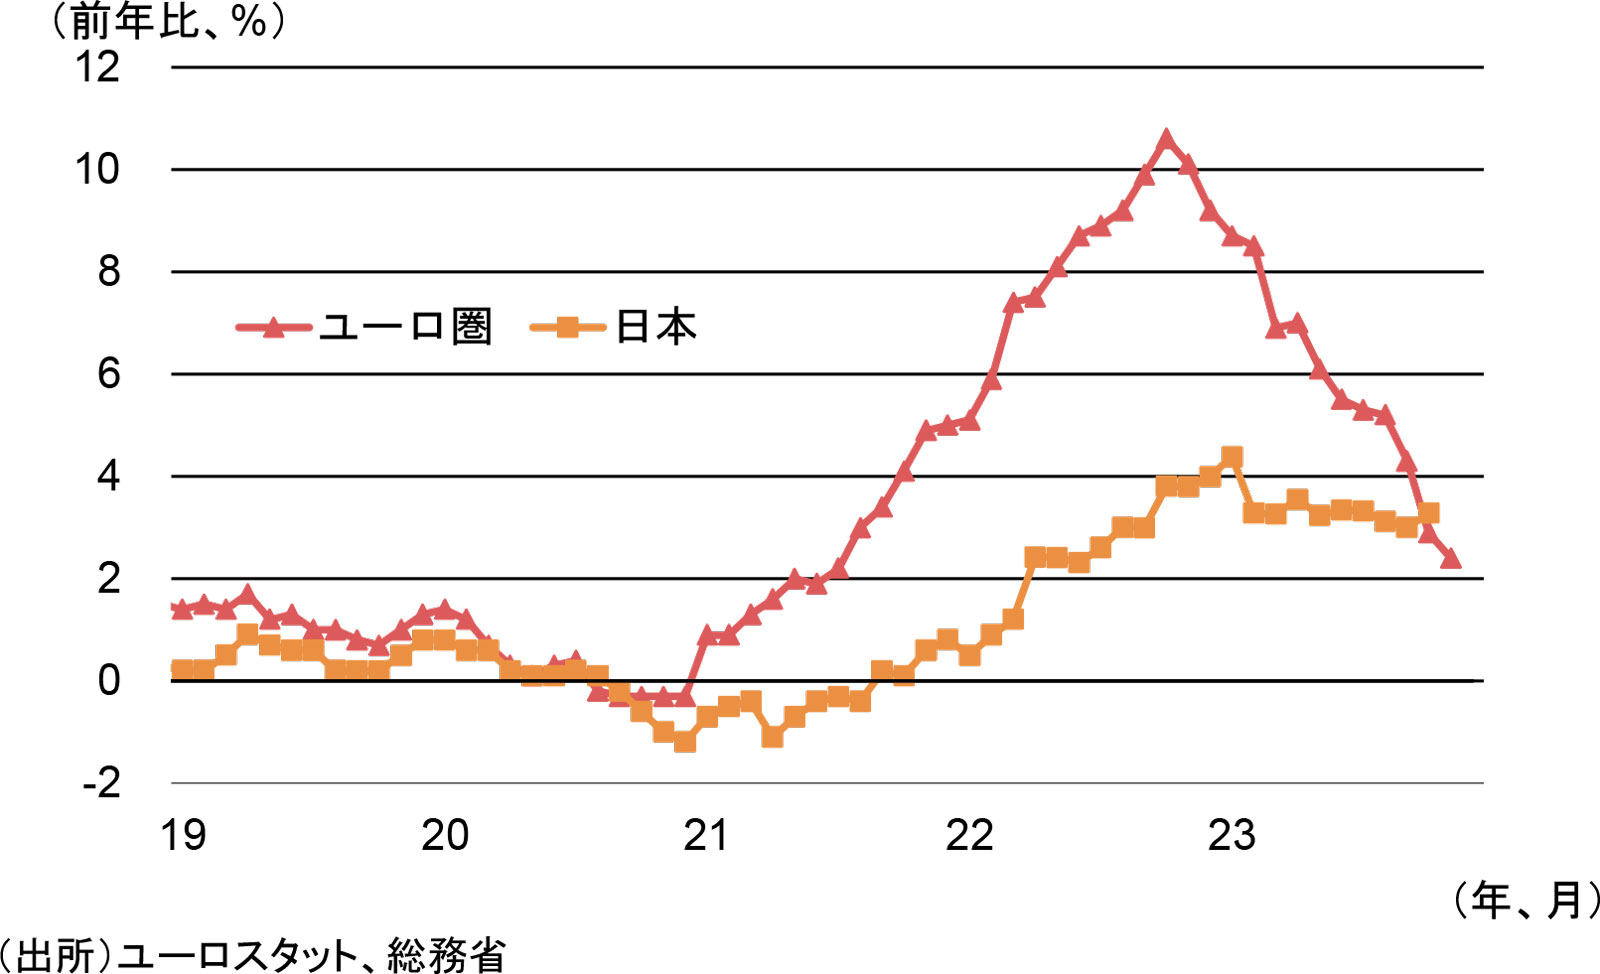 ユーロ圏と日本の消費者物価